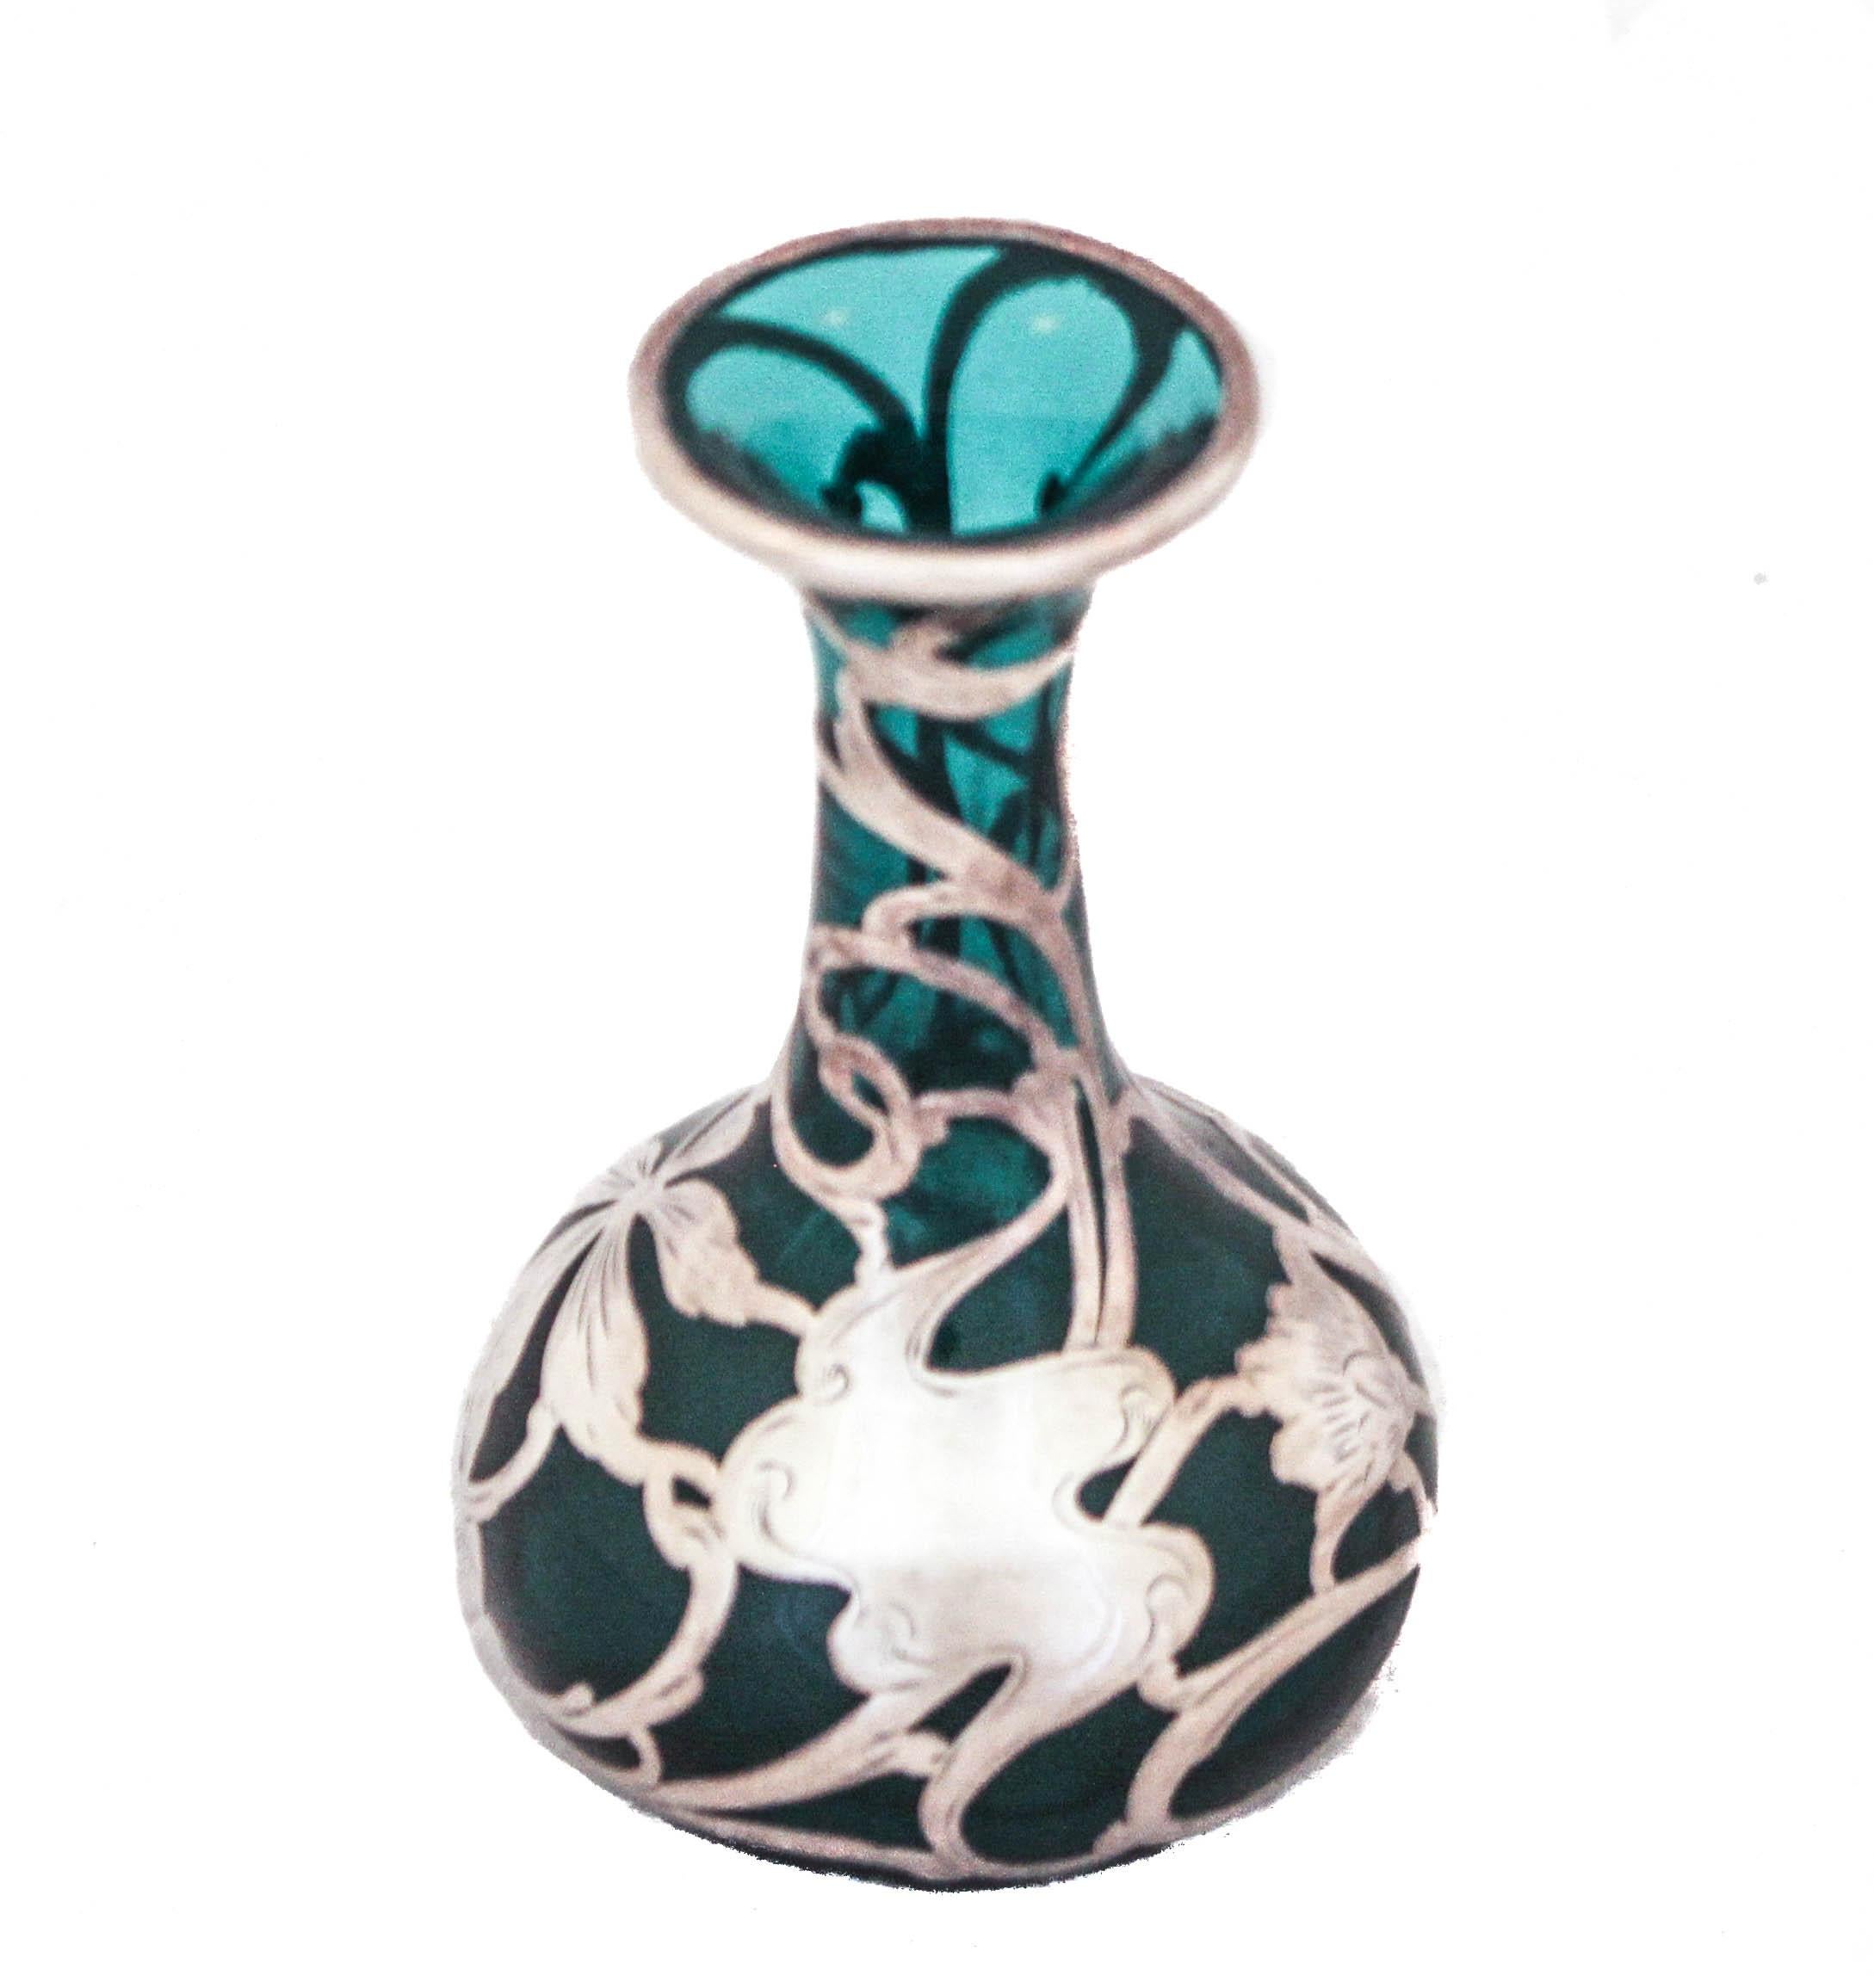 Angeboten wird eine Vase aus Sterlingsilber im Jugendstil, die mit einer tealfarbenen Schicht überzogen ist.  Das silberne Jugendstilmuster umgibt die gesamte Vase mit Wirbeln, Blüten und Blättern - alles Motive dieses Genres.  Das Besondere ist,